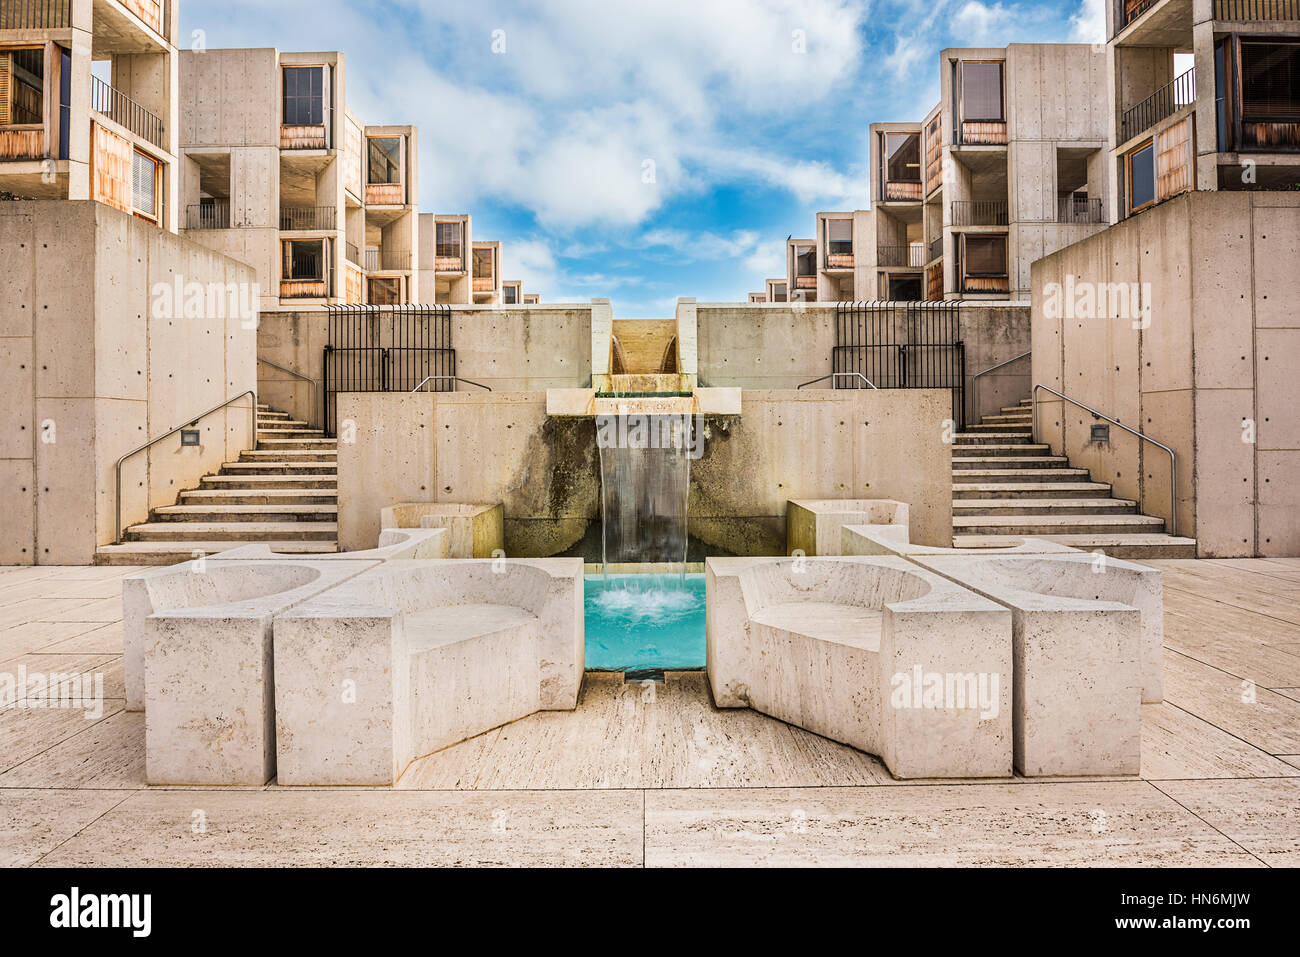 La Jolla, Stati Uniti d'America - 10 dicembre 2015: architettura simmetrica del Salk Institute di San Diego con blue una piscina con fontana Foto Stock